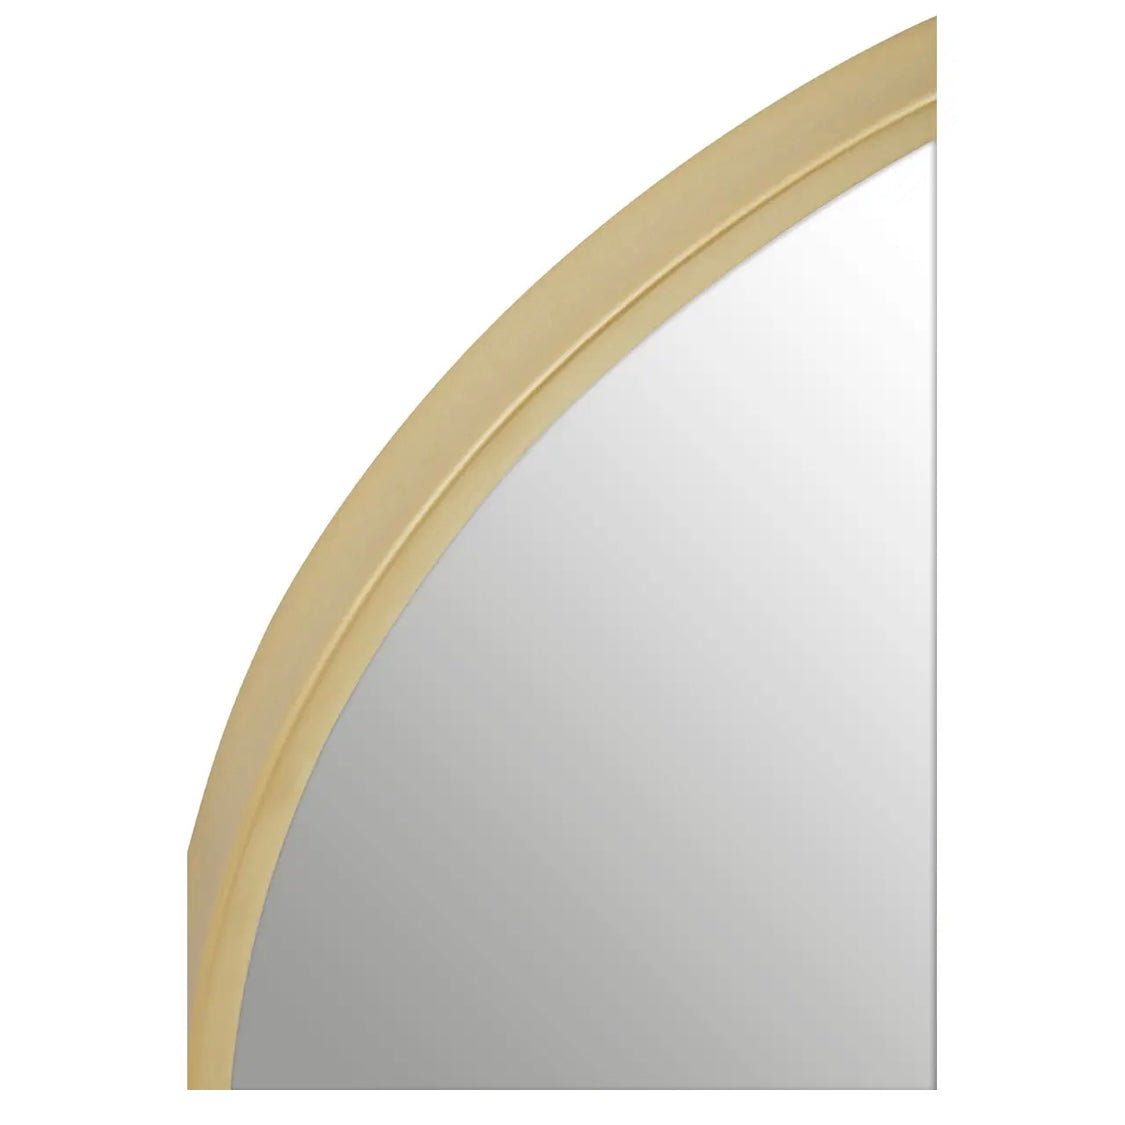 Gold Arch Mirror